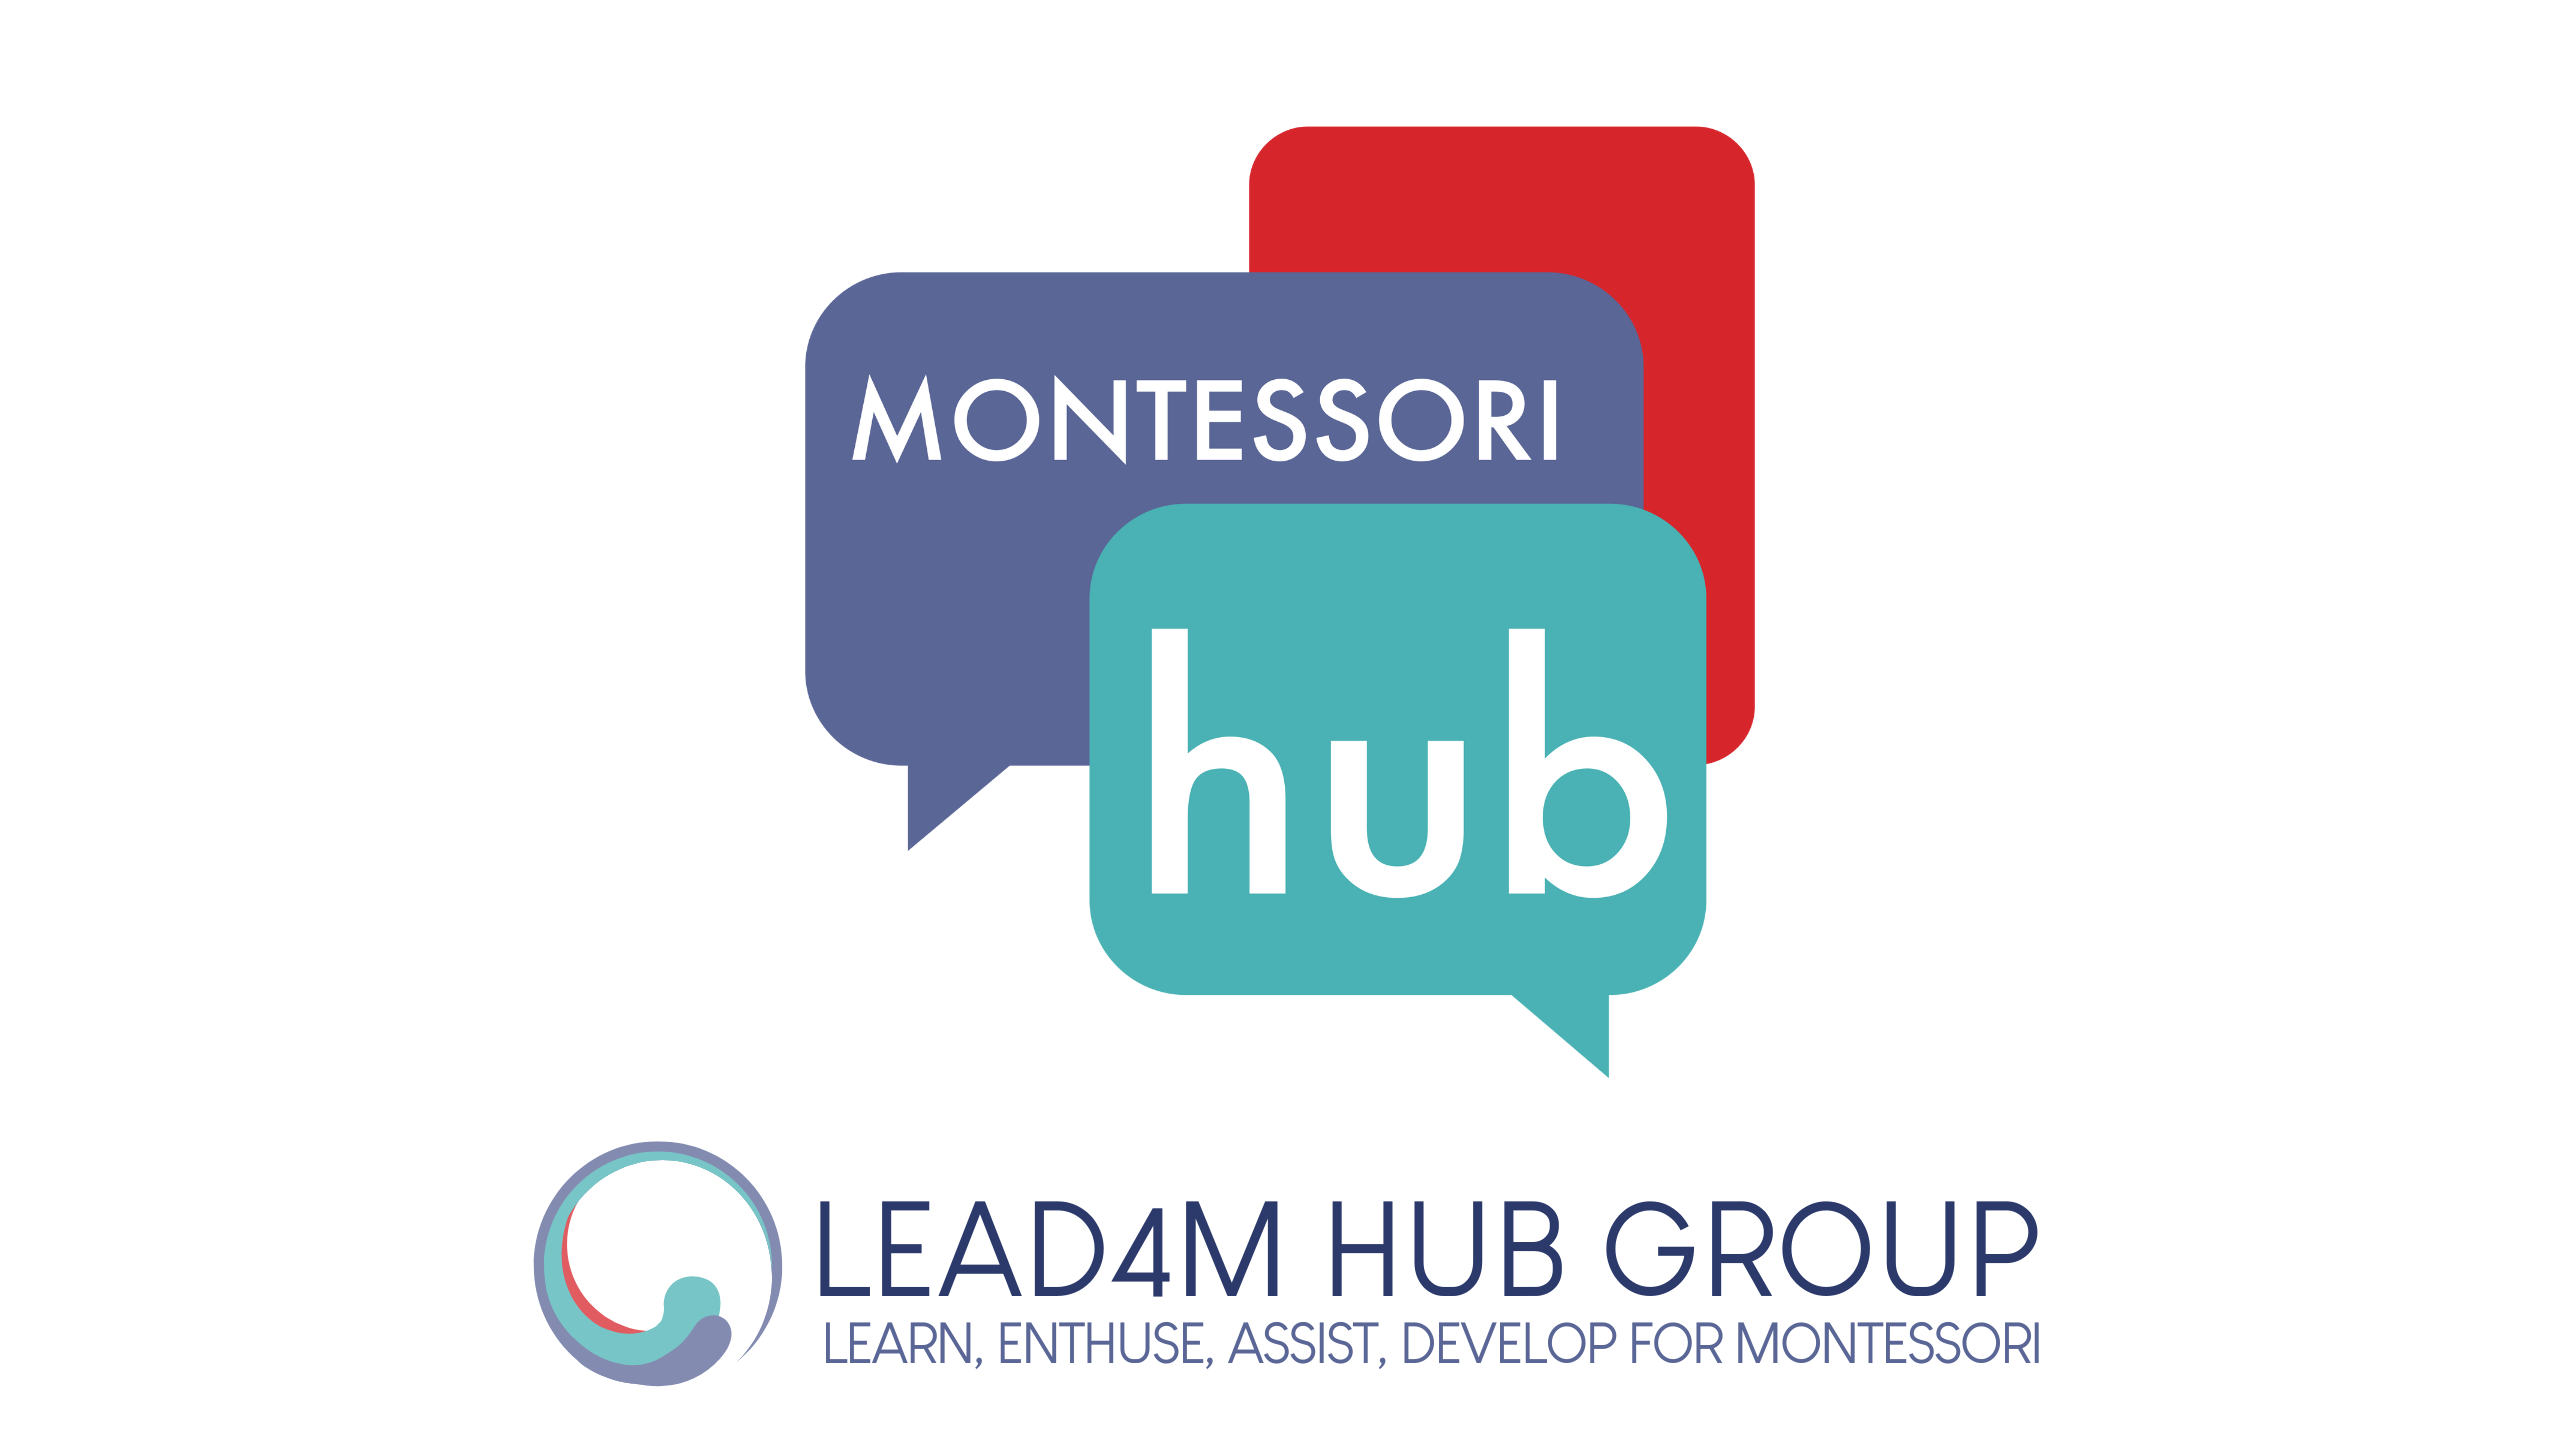 Montessori hub